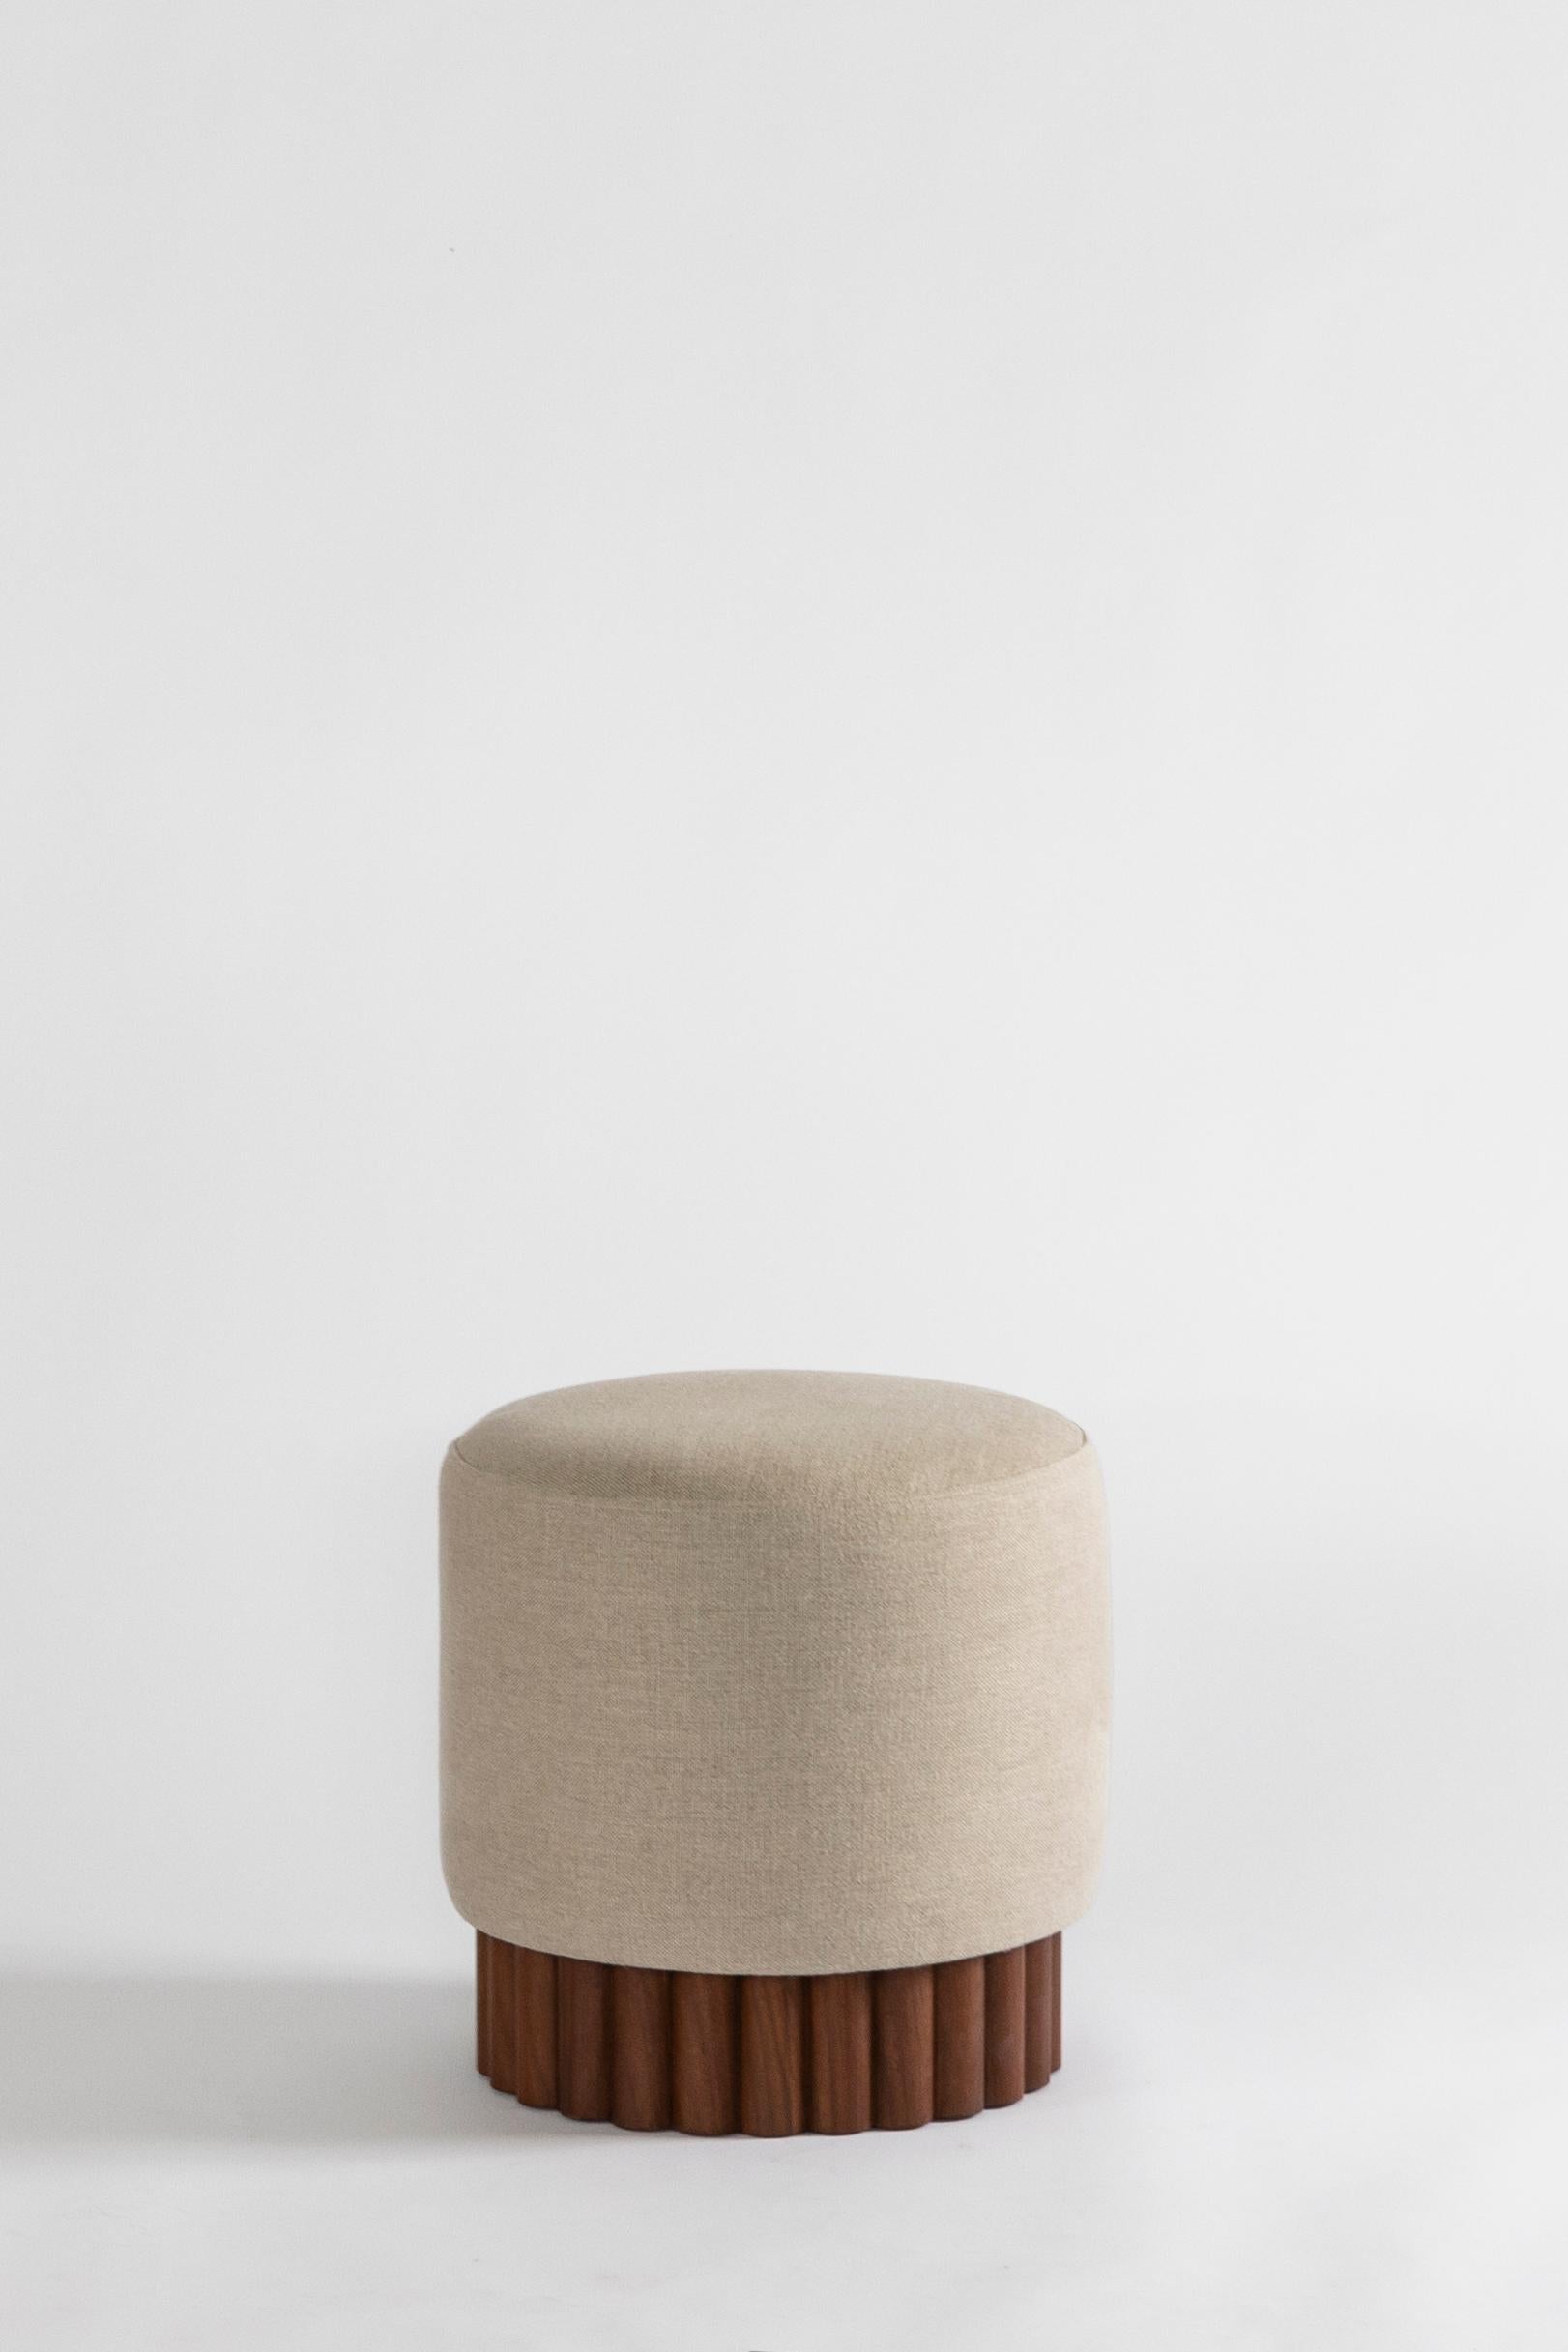 Minimalist  LOTO Pouf in Linen by Peca For Sale